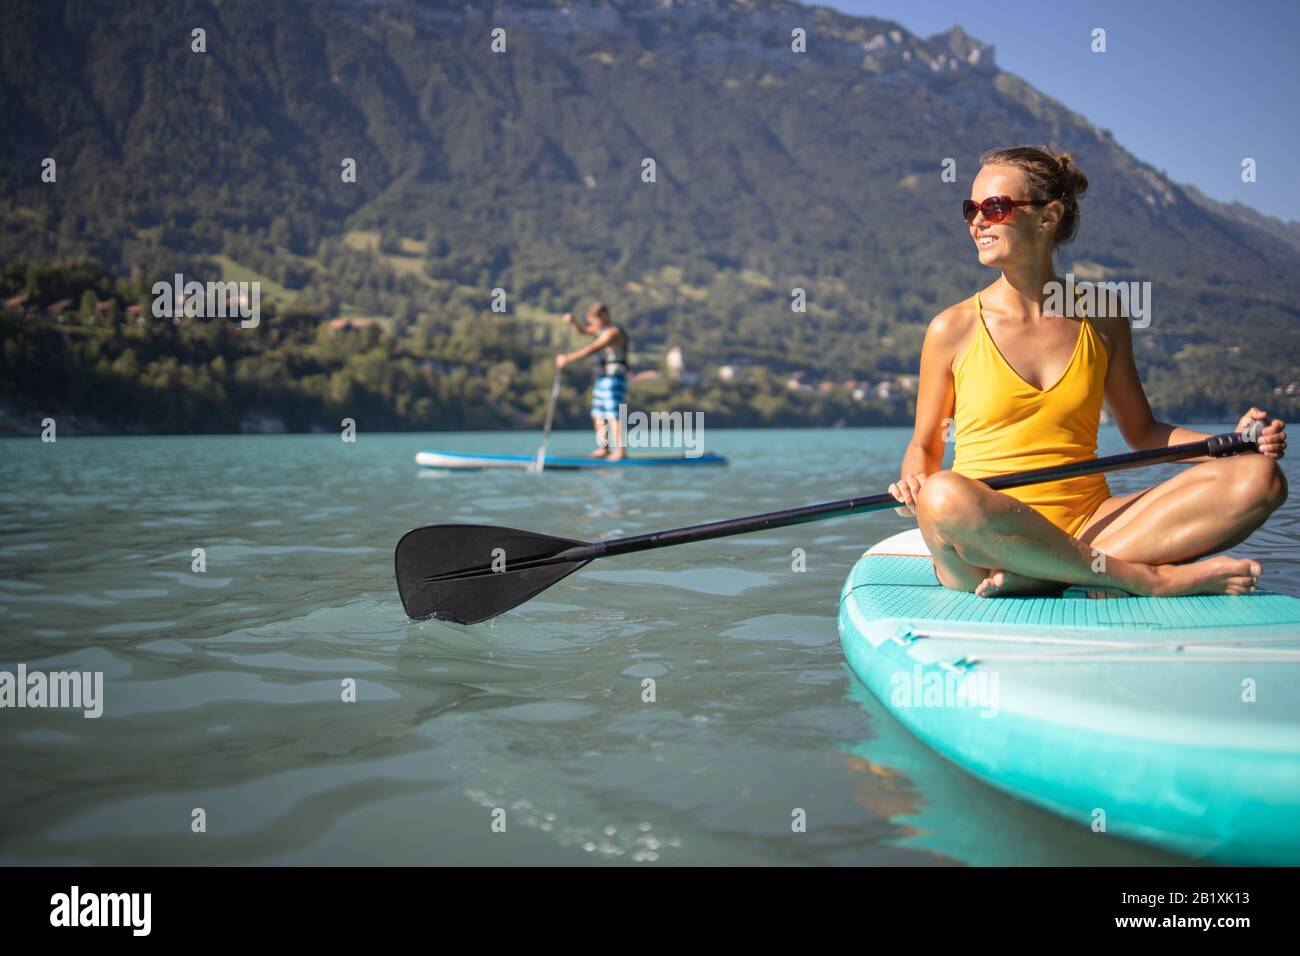 SUP Stand Up Paddle board concept - jolie jeune femme paddle sur un beau lac en fin d'après-midi chaud - léger coup de underwater Banque D'Images